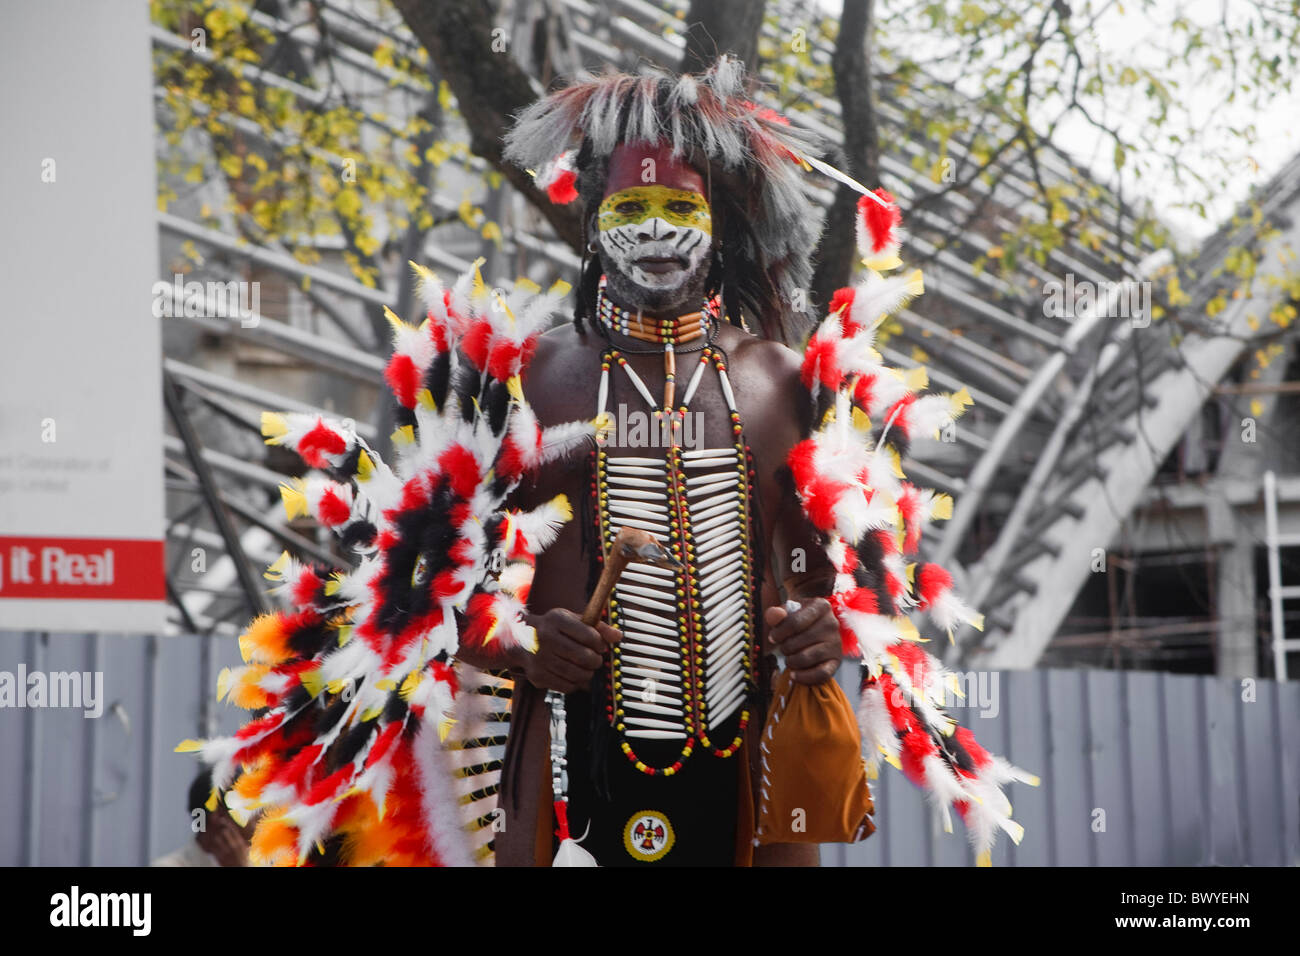 Carnaval de Trinidad mas indien homme posant dans la rue Banque D'Images